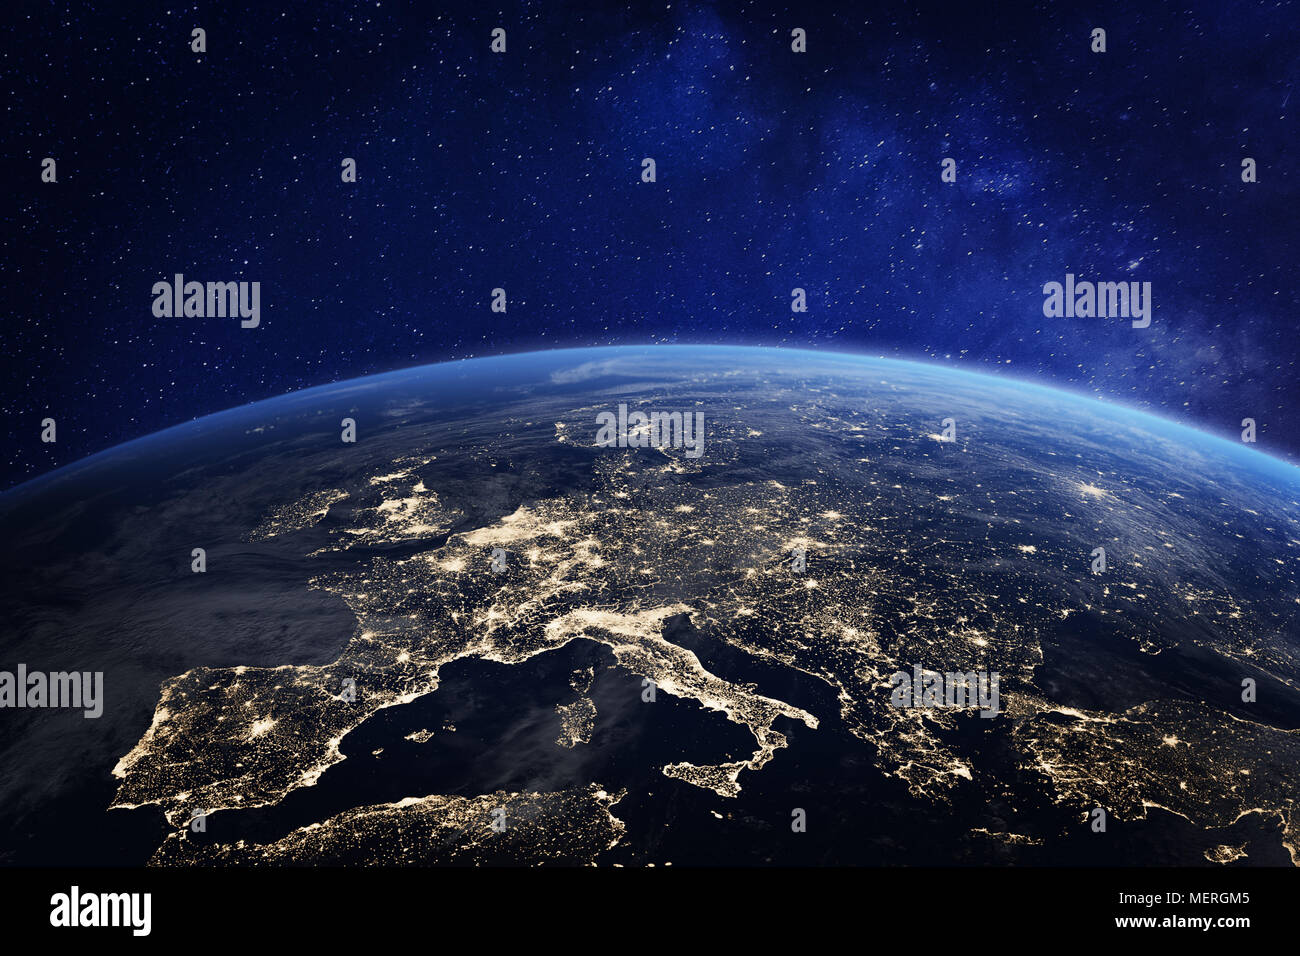 Europa vista desde el espacio por la noche con las luces de la ciudad mostrando la actividad humana en Alemania, Francia, España, Italia y otros países, 3D rendering del planeta Foto de stock